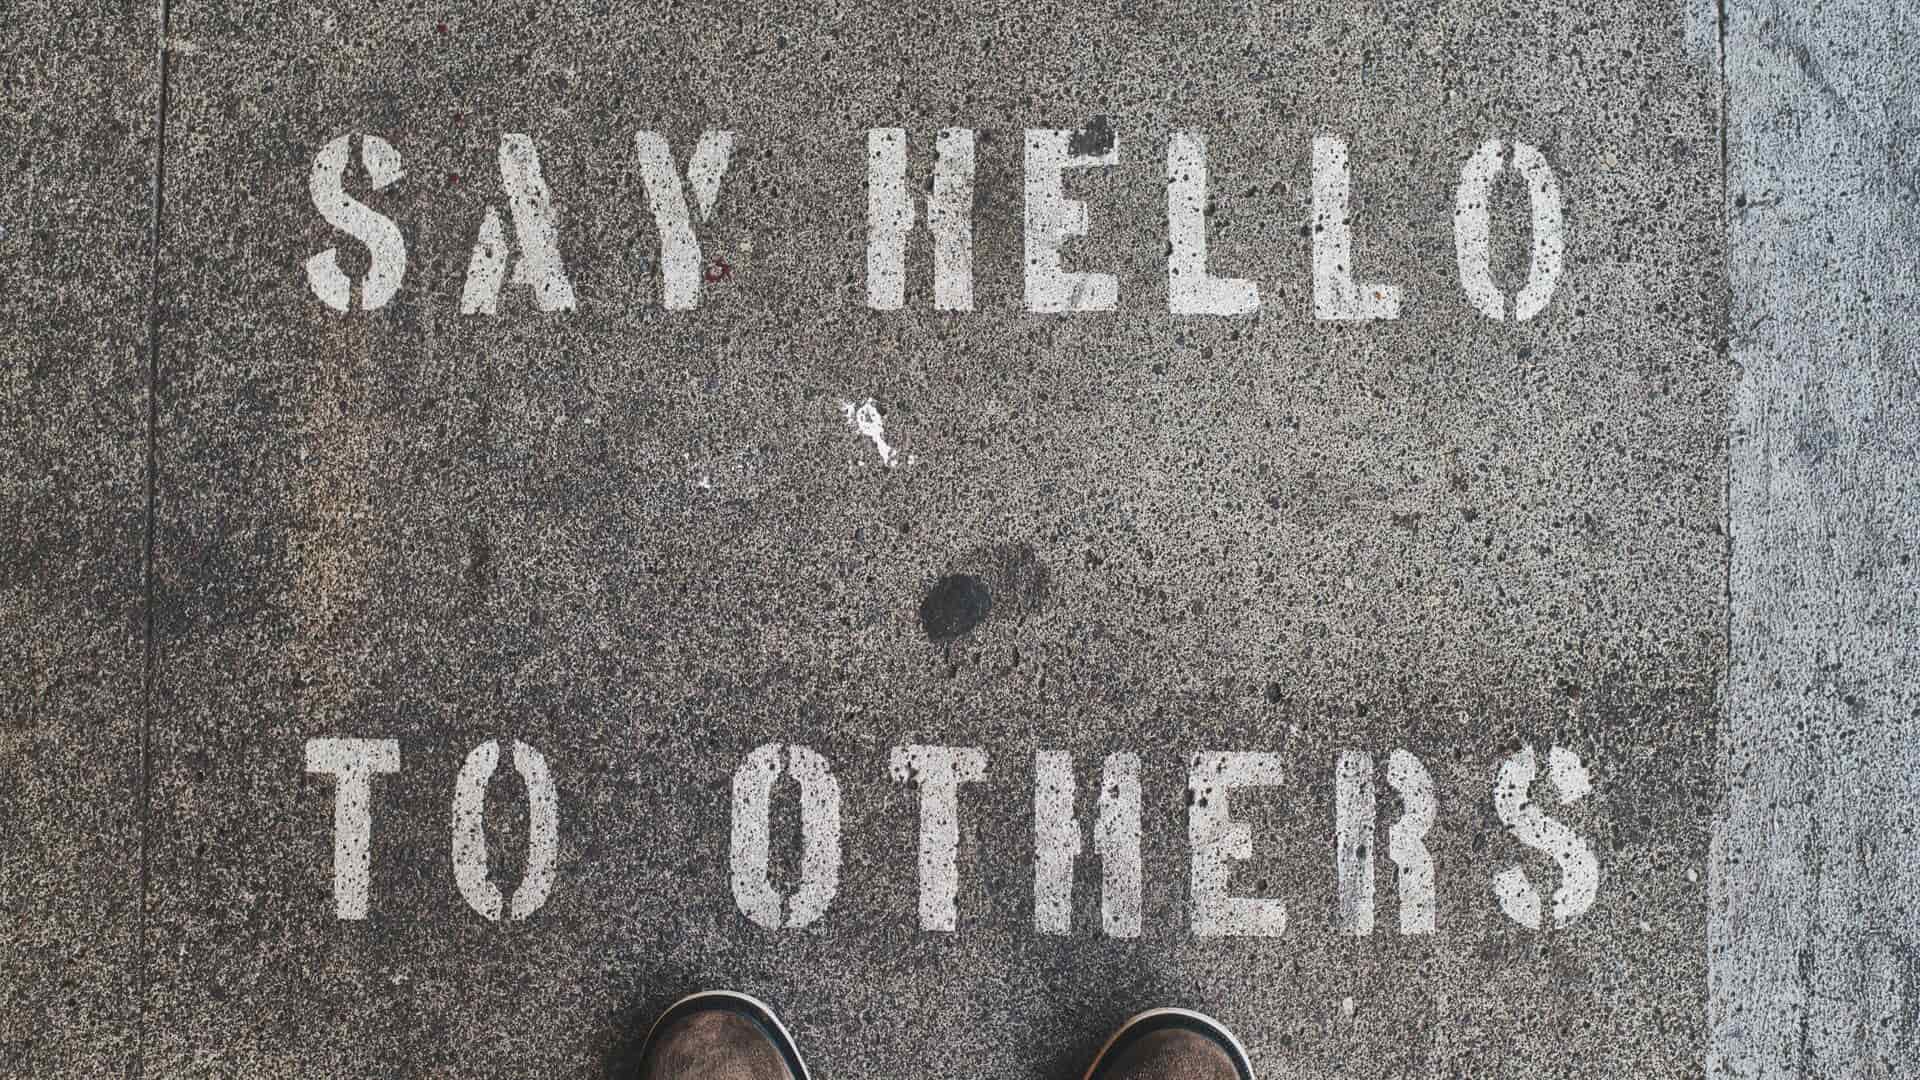 chão de cimento com frase "say hello to others"